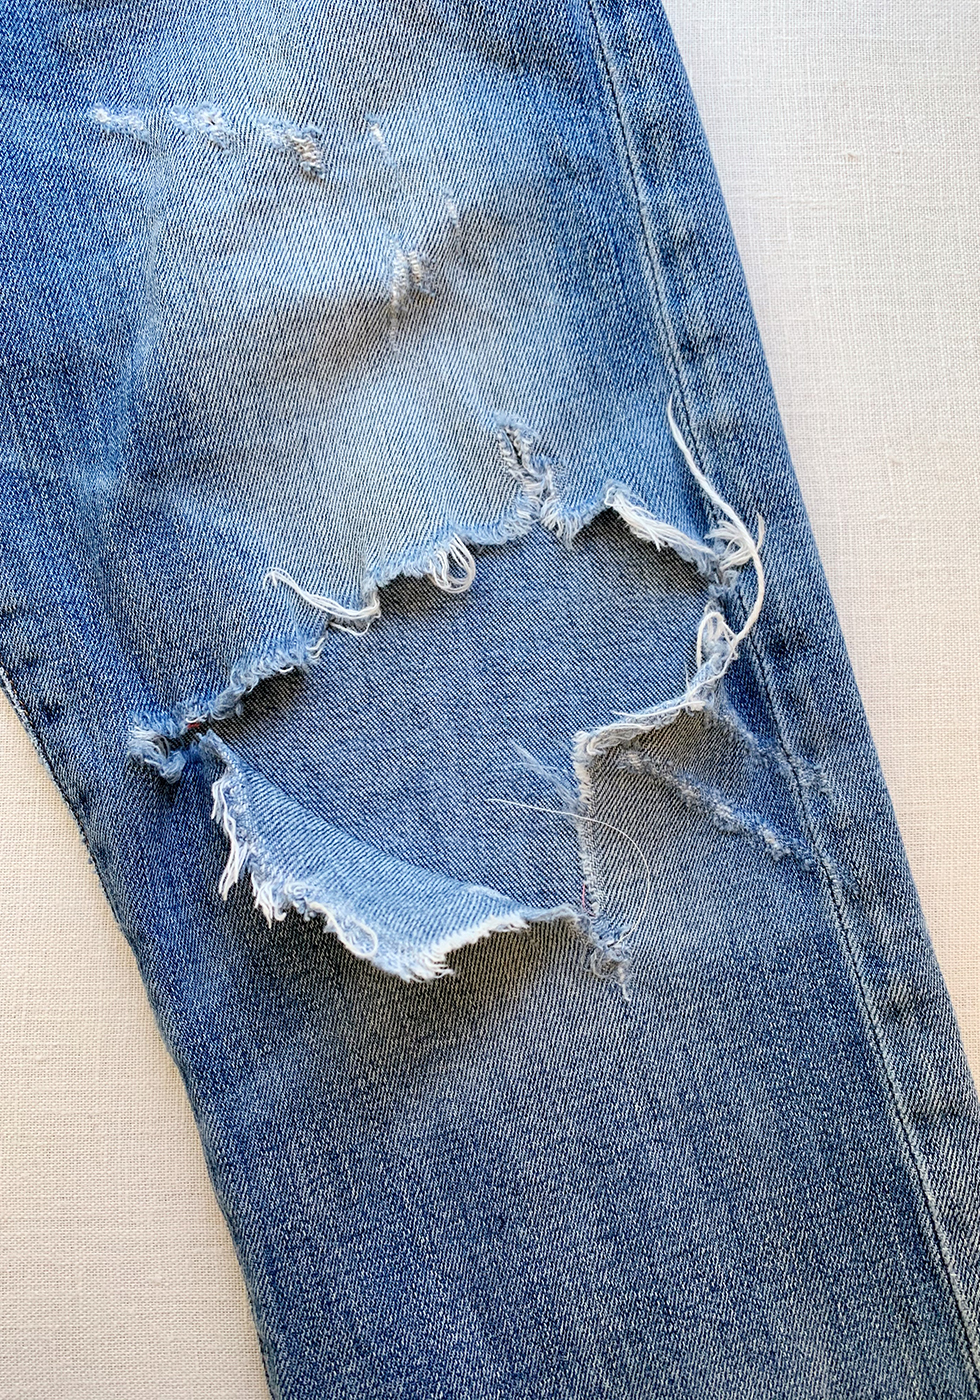 Модные мужские джинсы 2021 новые интересные модели которые востребованы этим летом